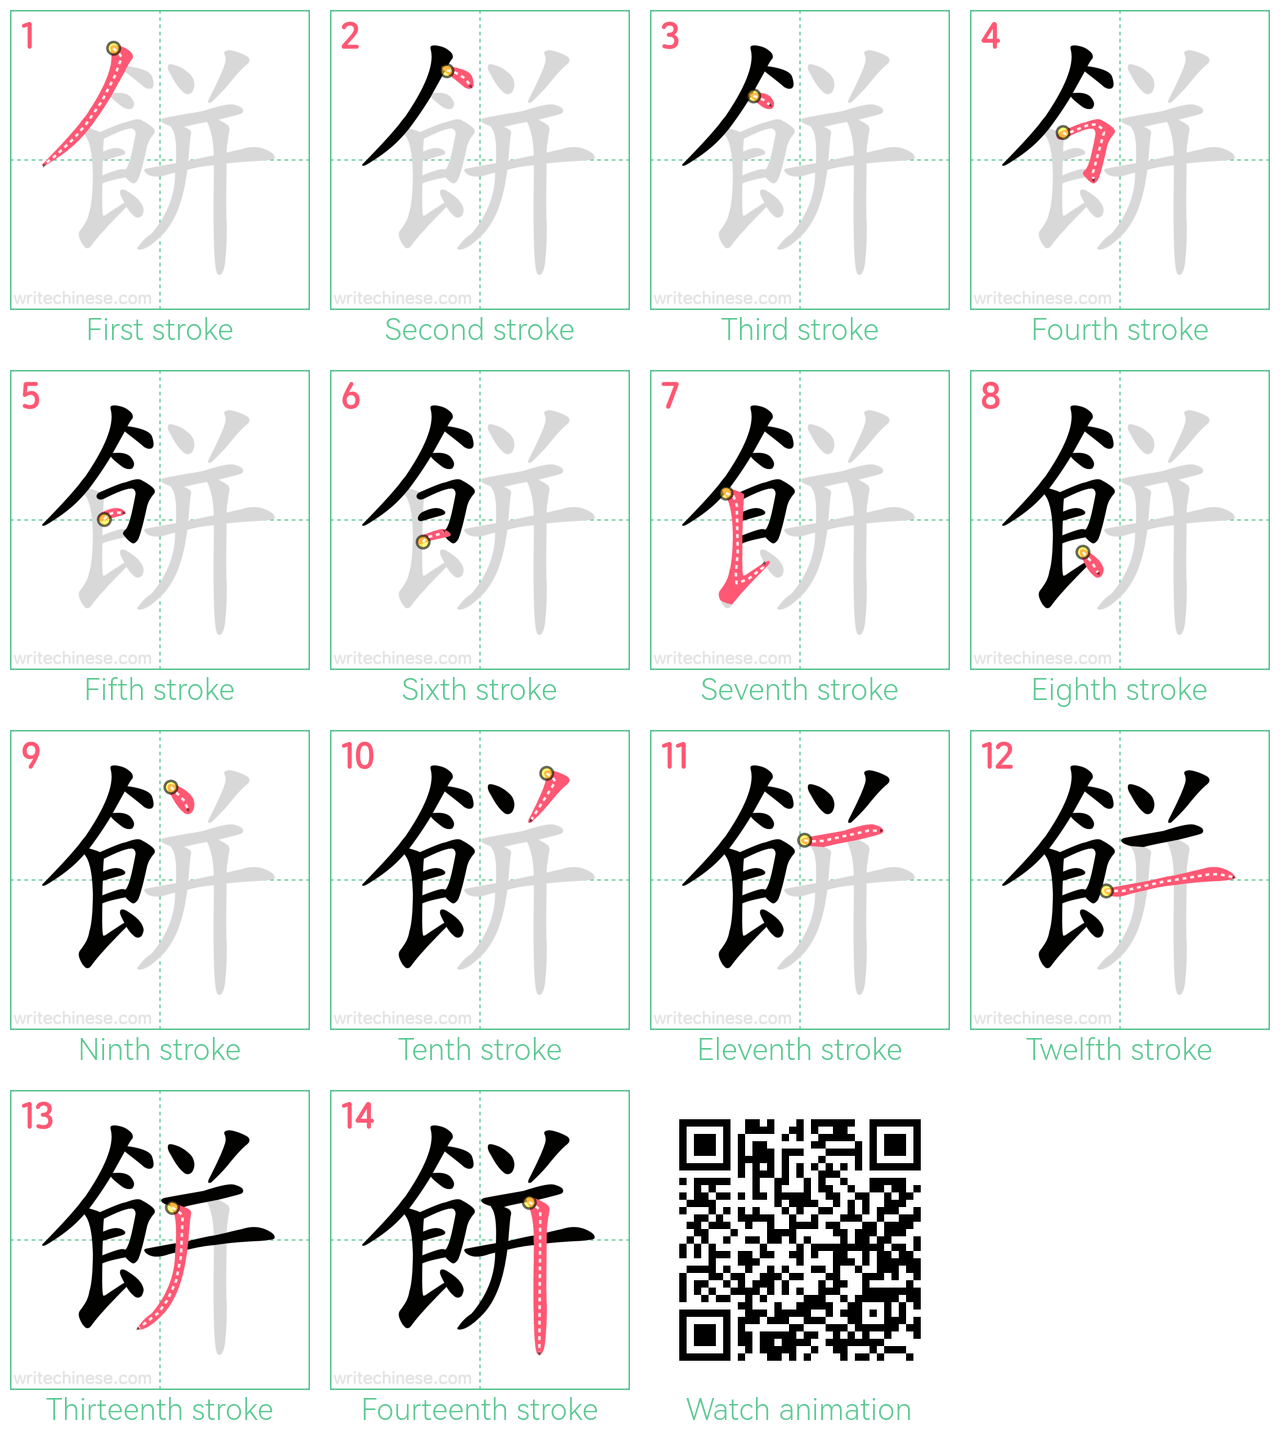 餅 step-by-step stroke order diagrams